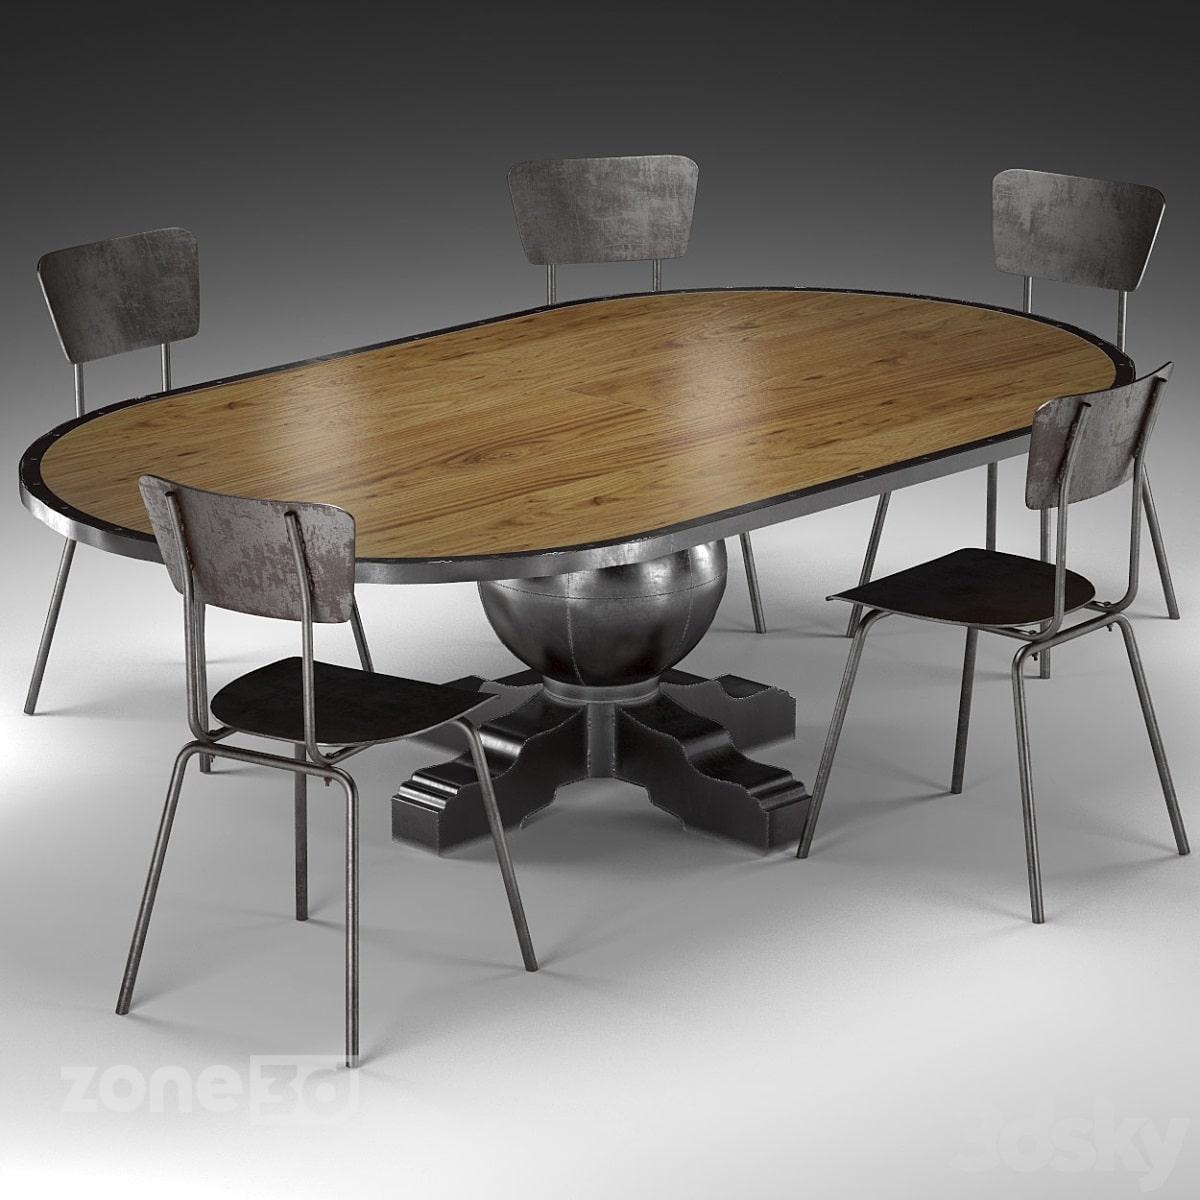 آبجکت میز غذاخوری بیضی چوبی صنعتی پنج نفره با صندلی فلزی مدل Enzo Pine